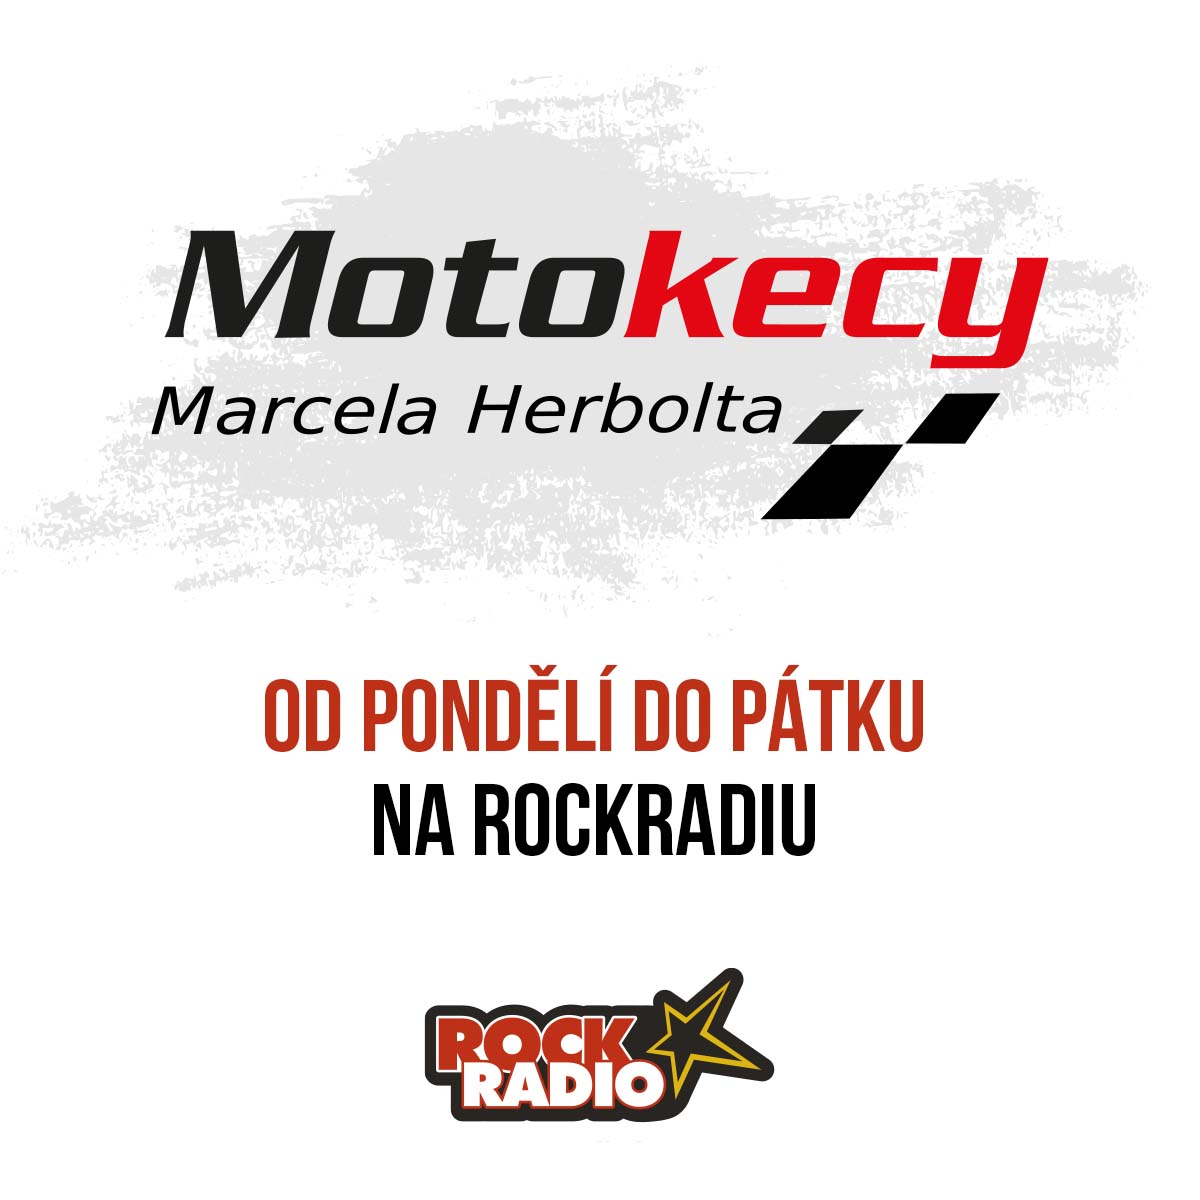 Motokecy Marcela Herbolta na pátek 15. září